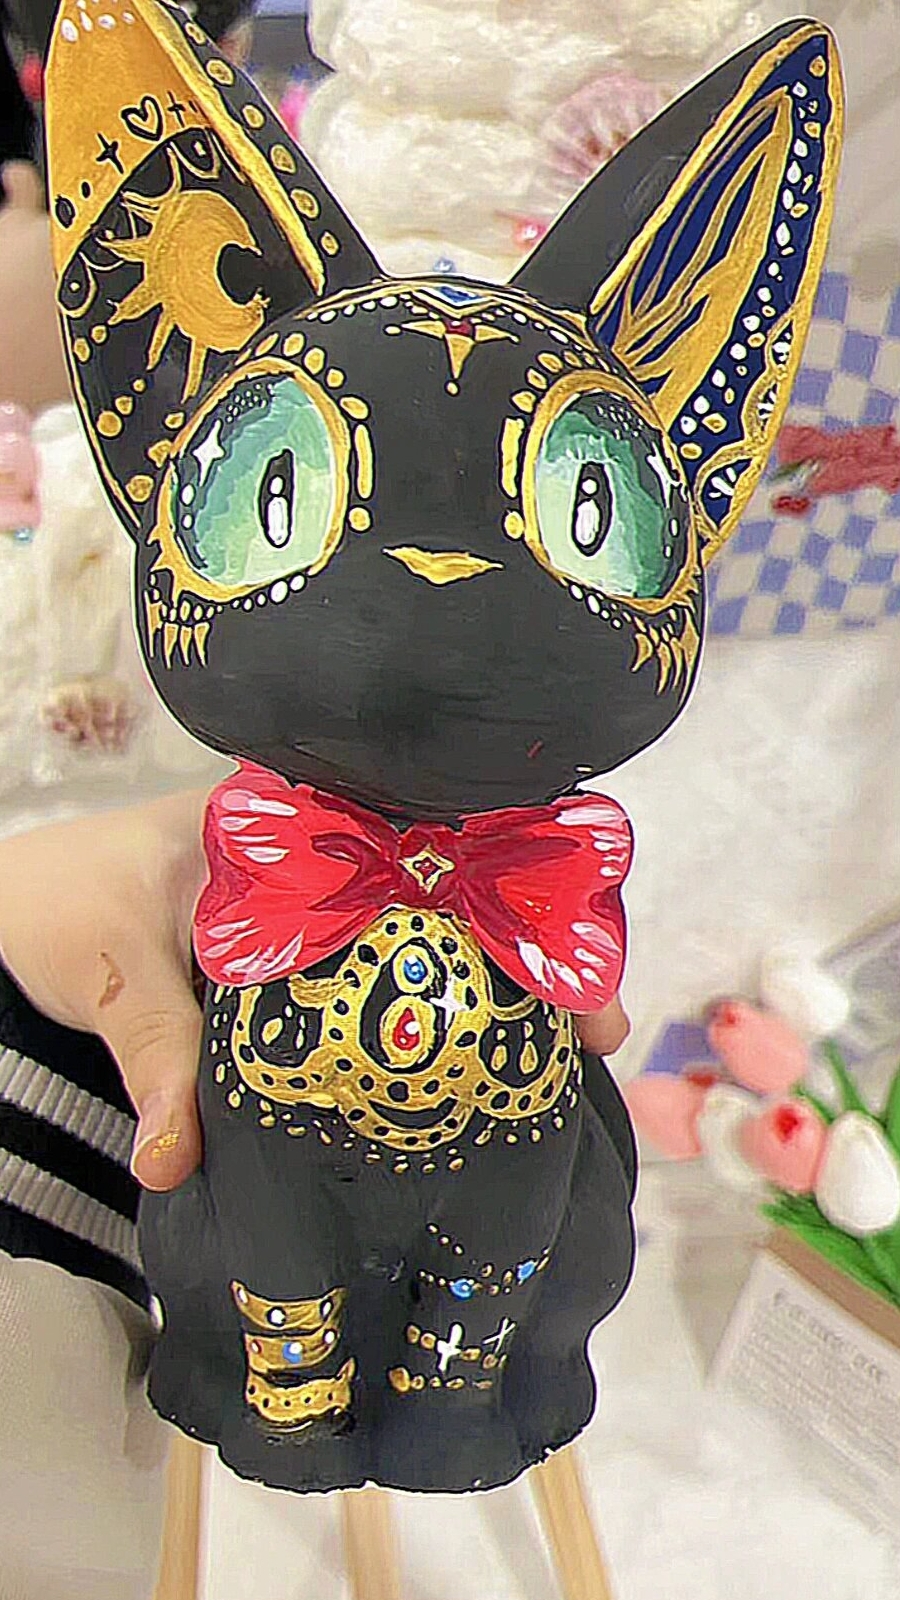 涂色手绘玩具礼物公仔小猫网红吉吉猫石膏娃娃猫咪玩偶埃及猫立体